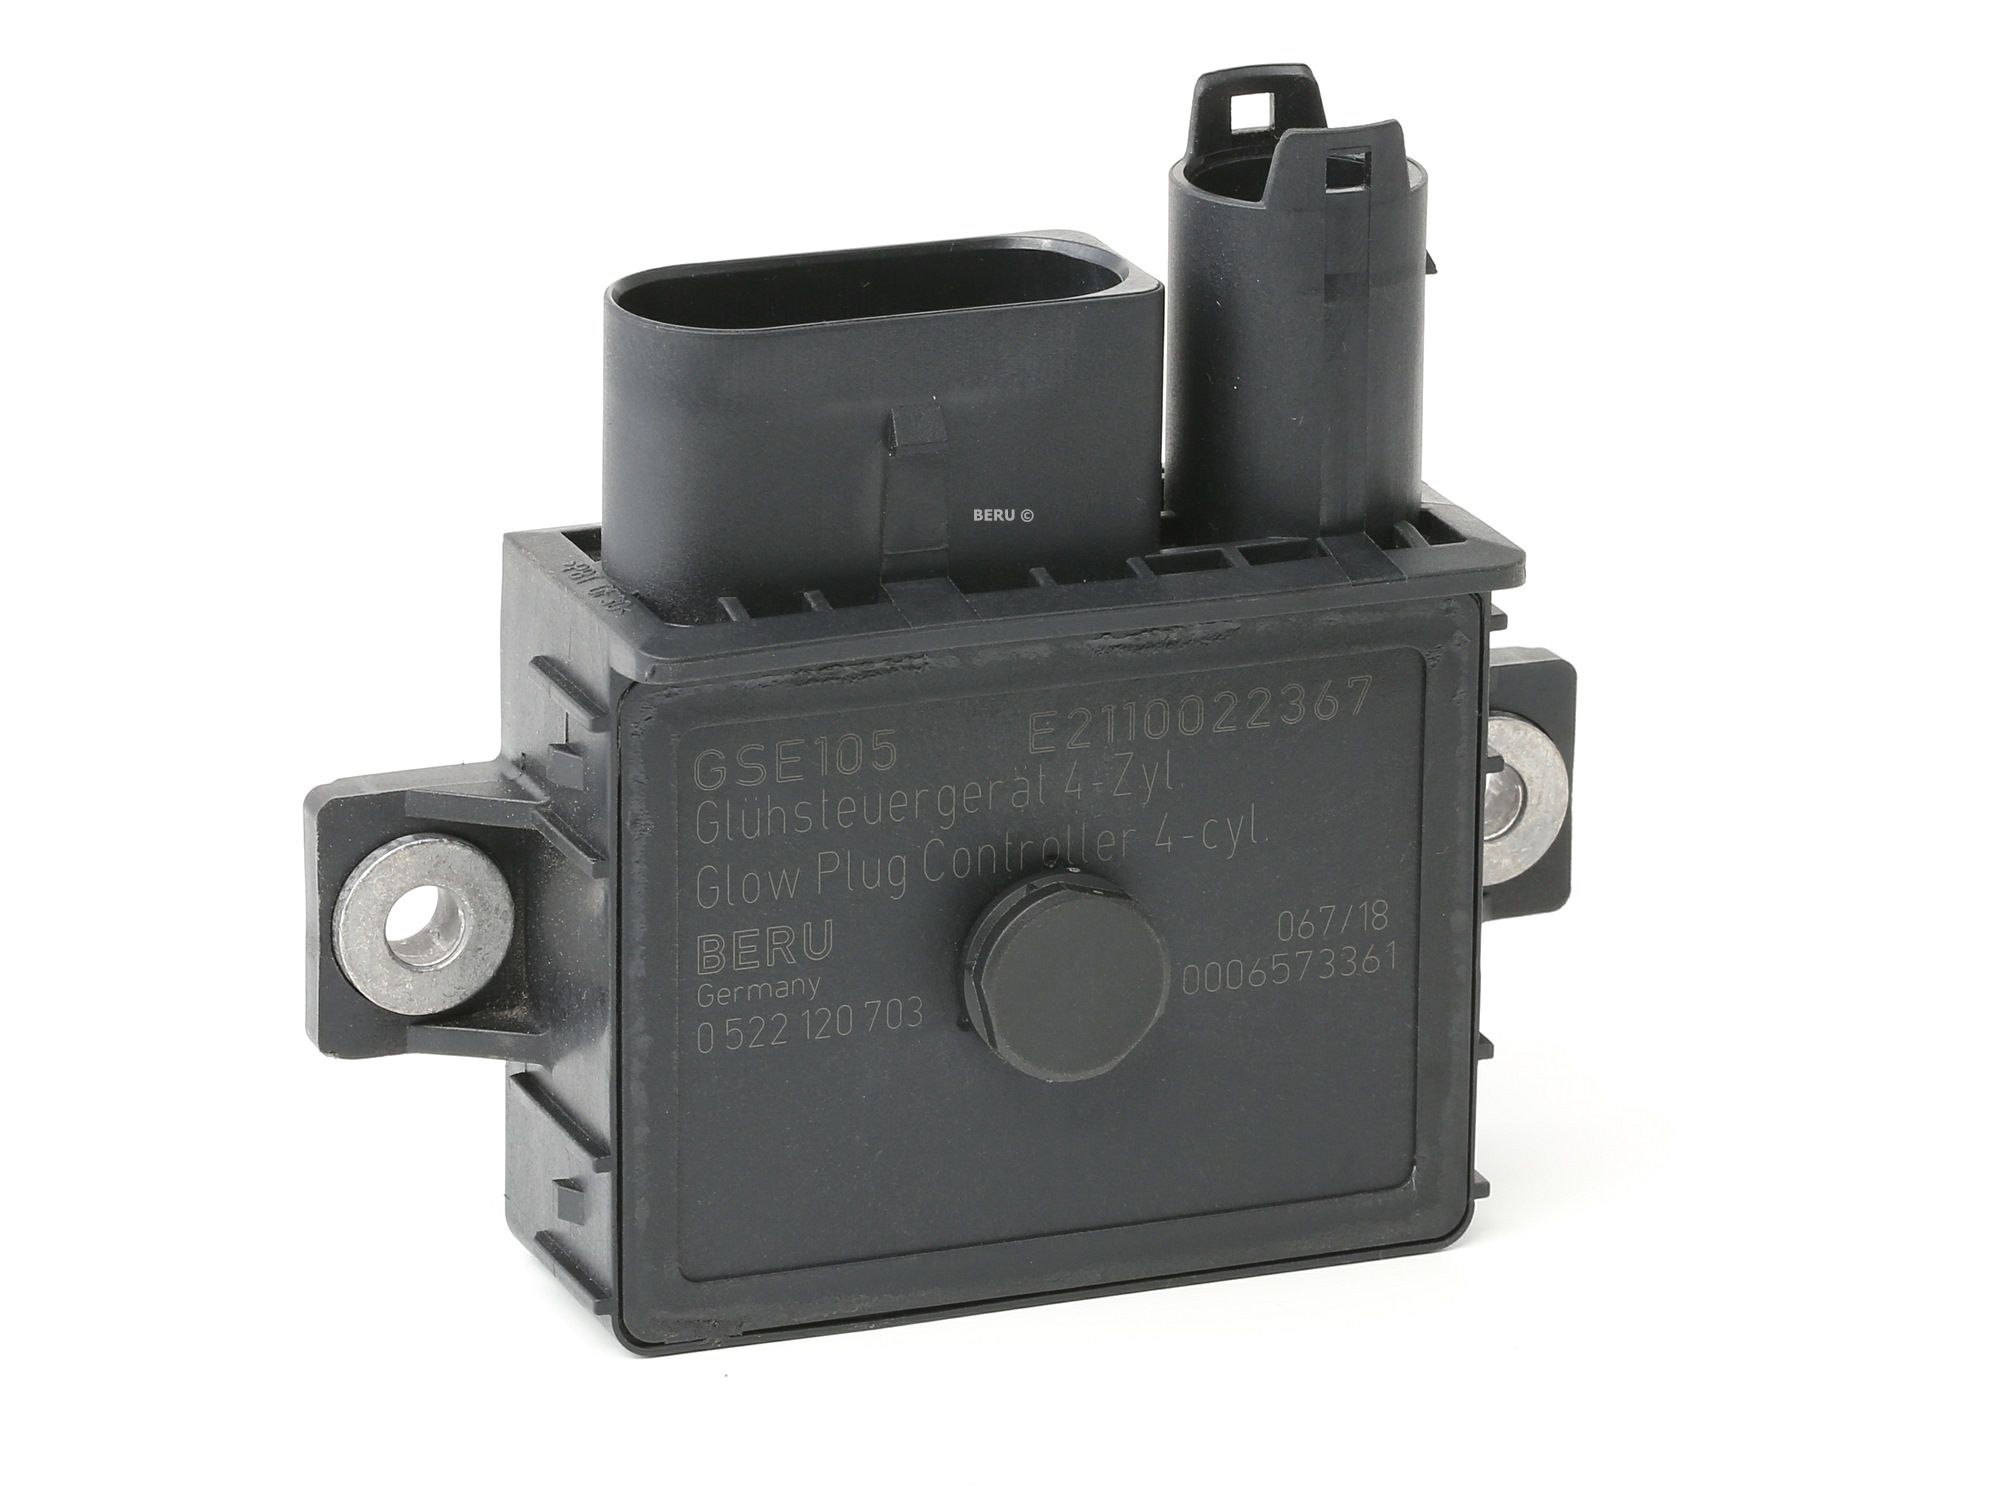 GSE105 BERU Control Unit, glow plug system - buy online